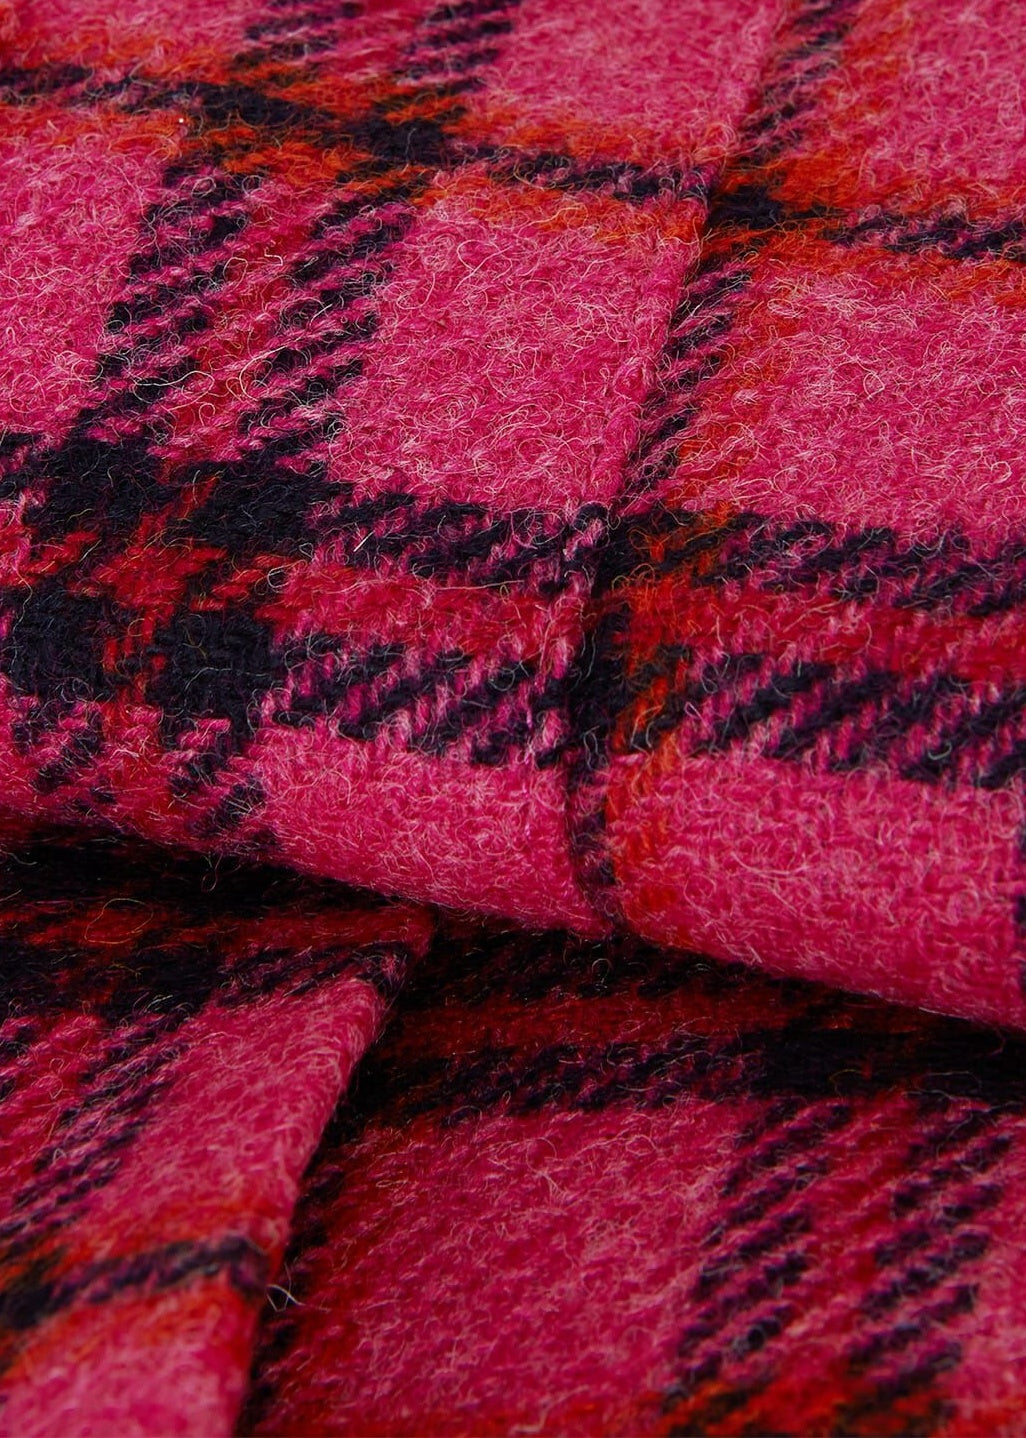 Leah Skirt 0223/7172/1049l00 Pink-Multi